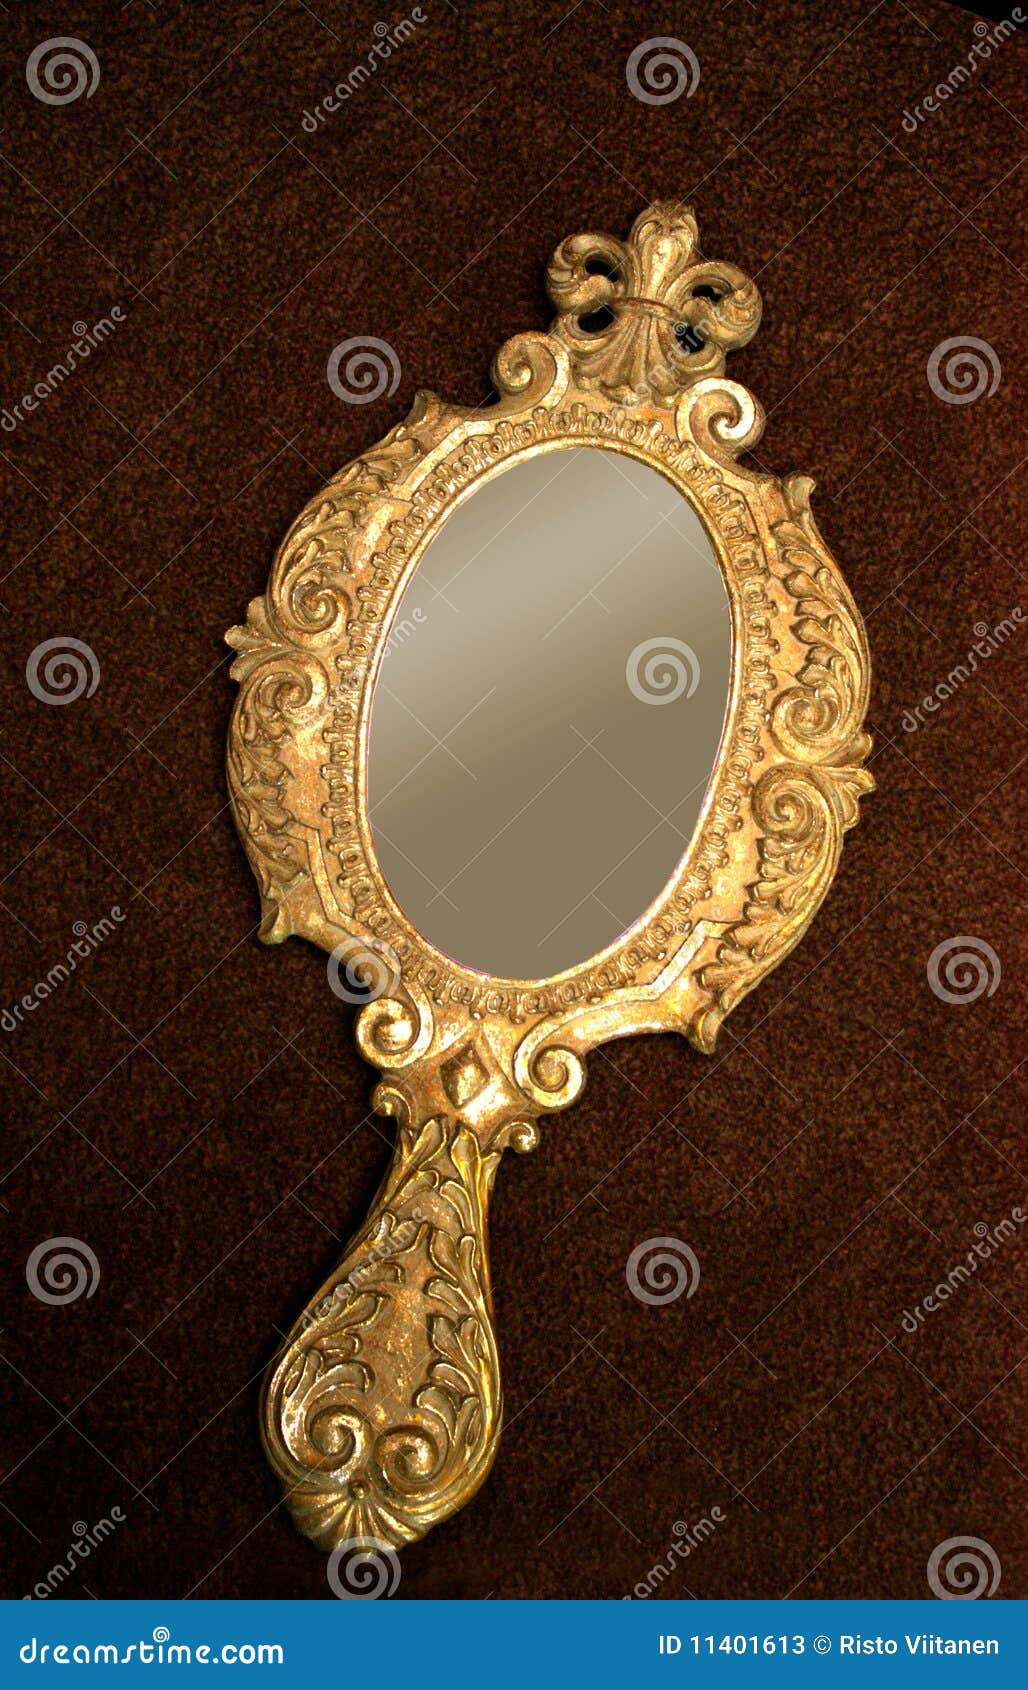 old brass hand-mirror